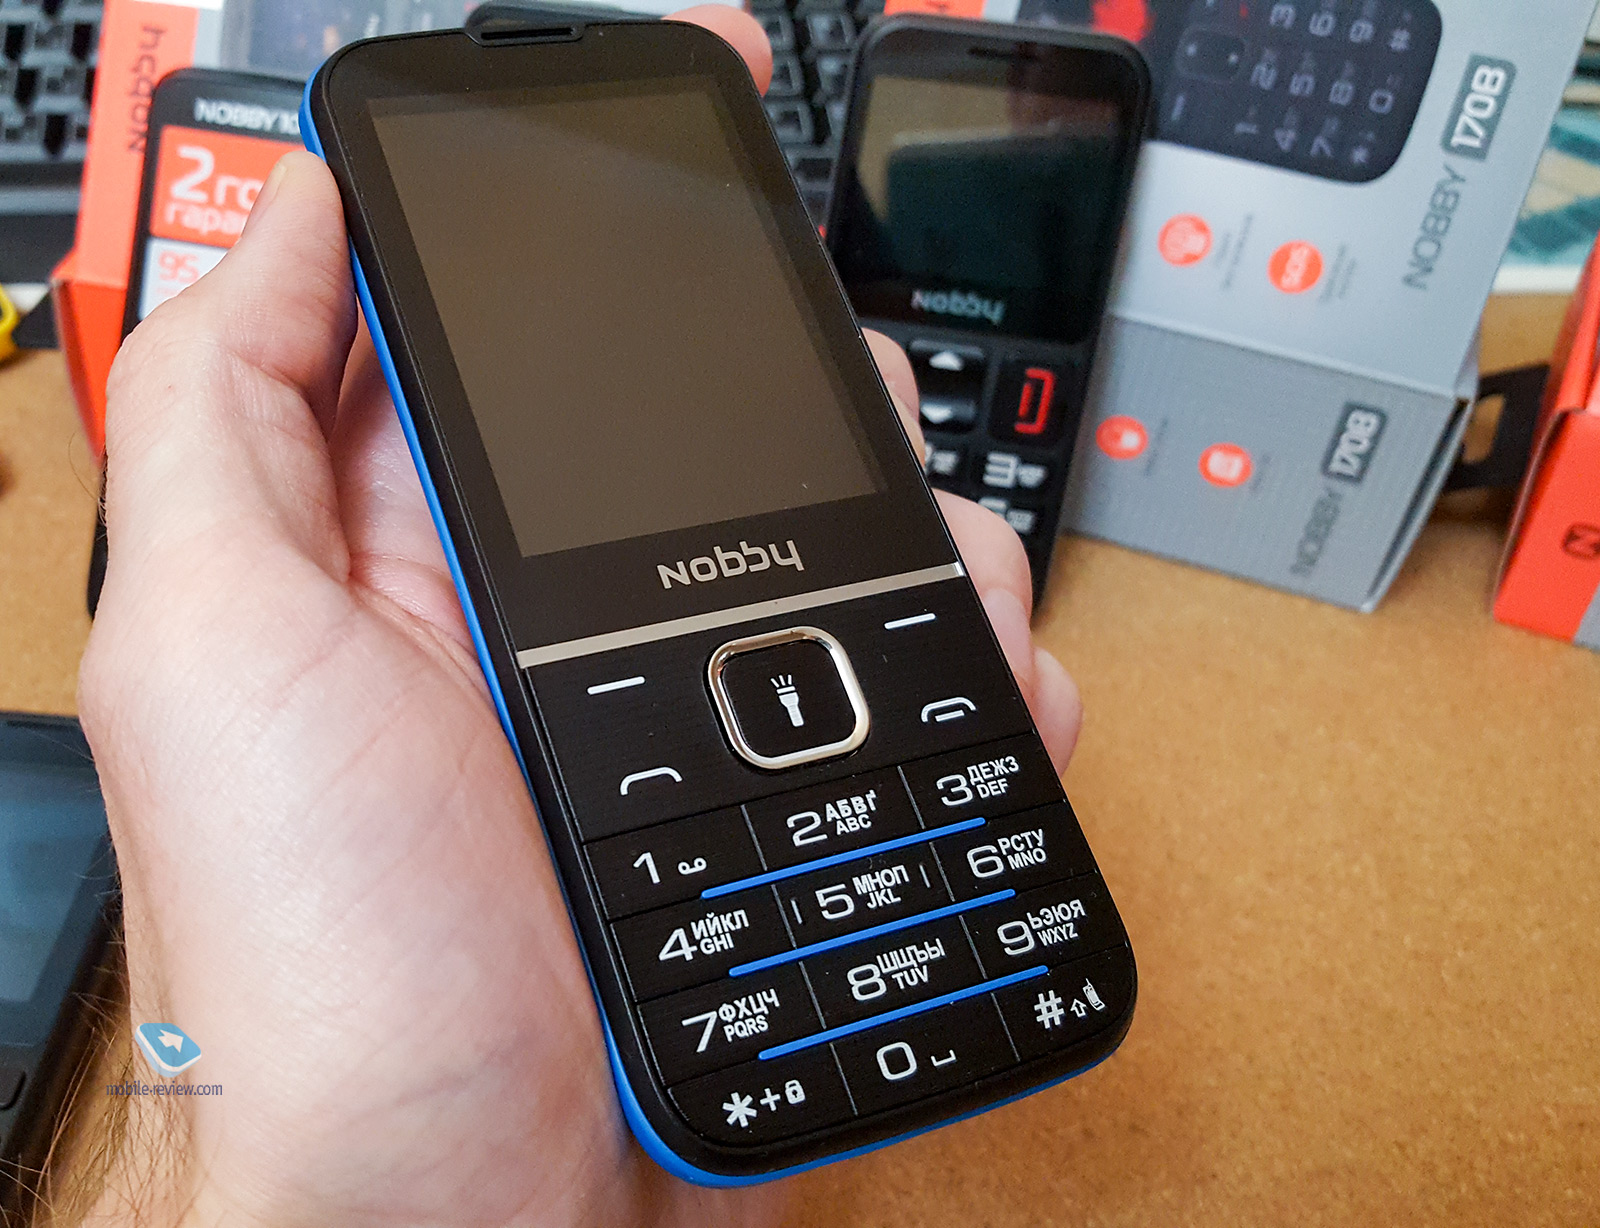 Кнопочный телефон Nobby 240c. Samsung s 2018 кнопочный. Самсунг кнопочный 2020. Как включается кнопочный телефон